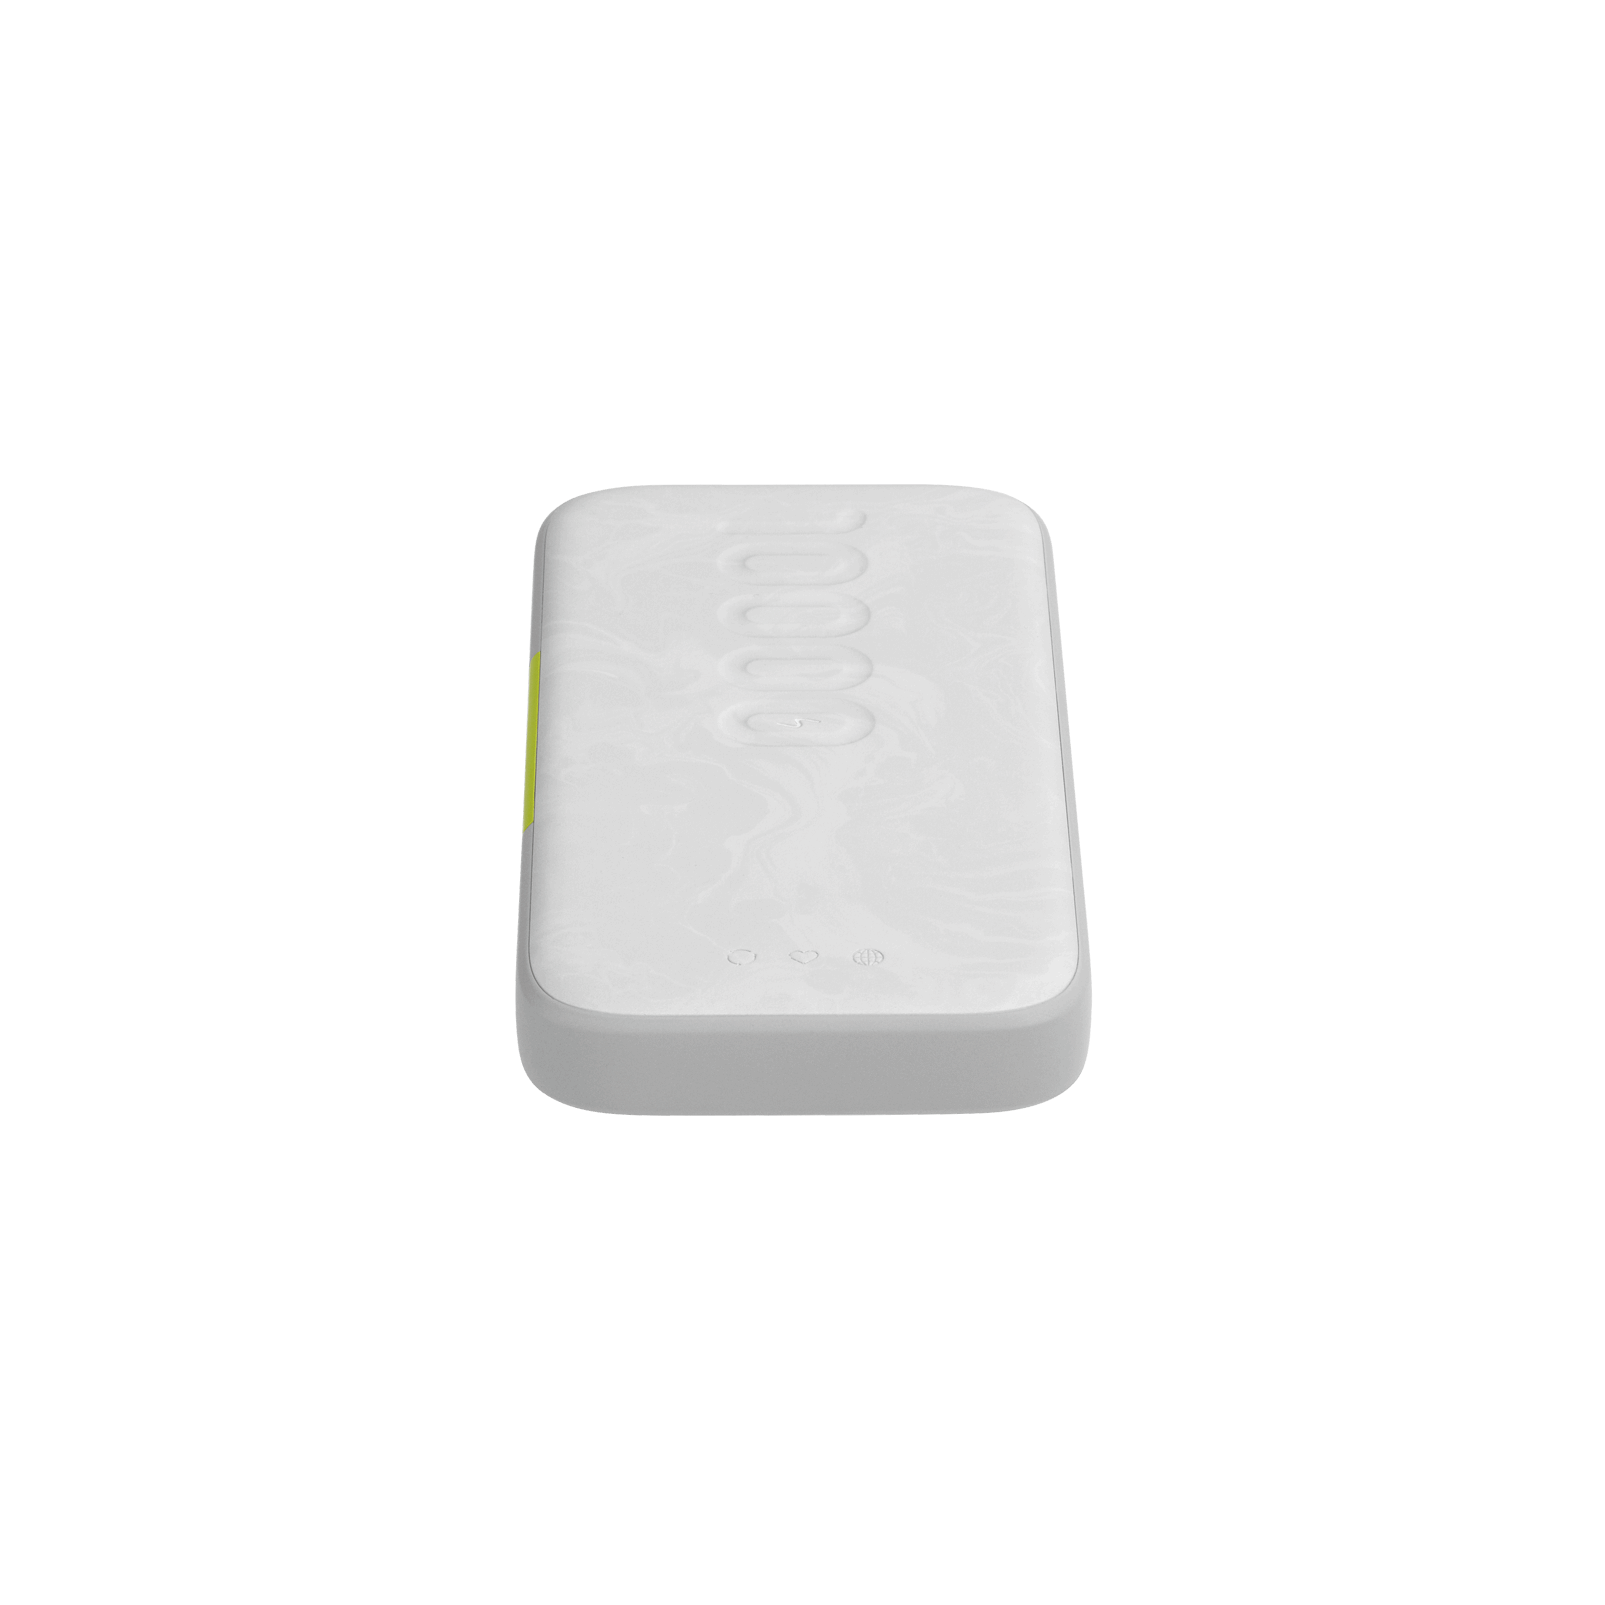 InstantGo 10000 wireless